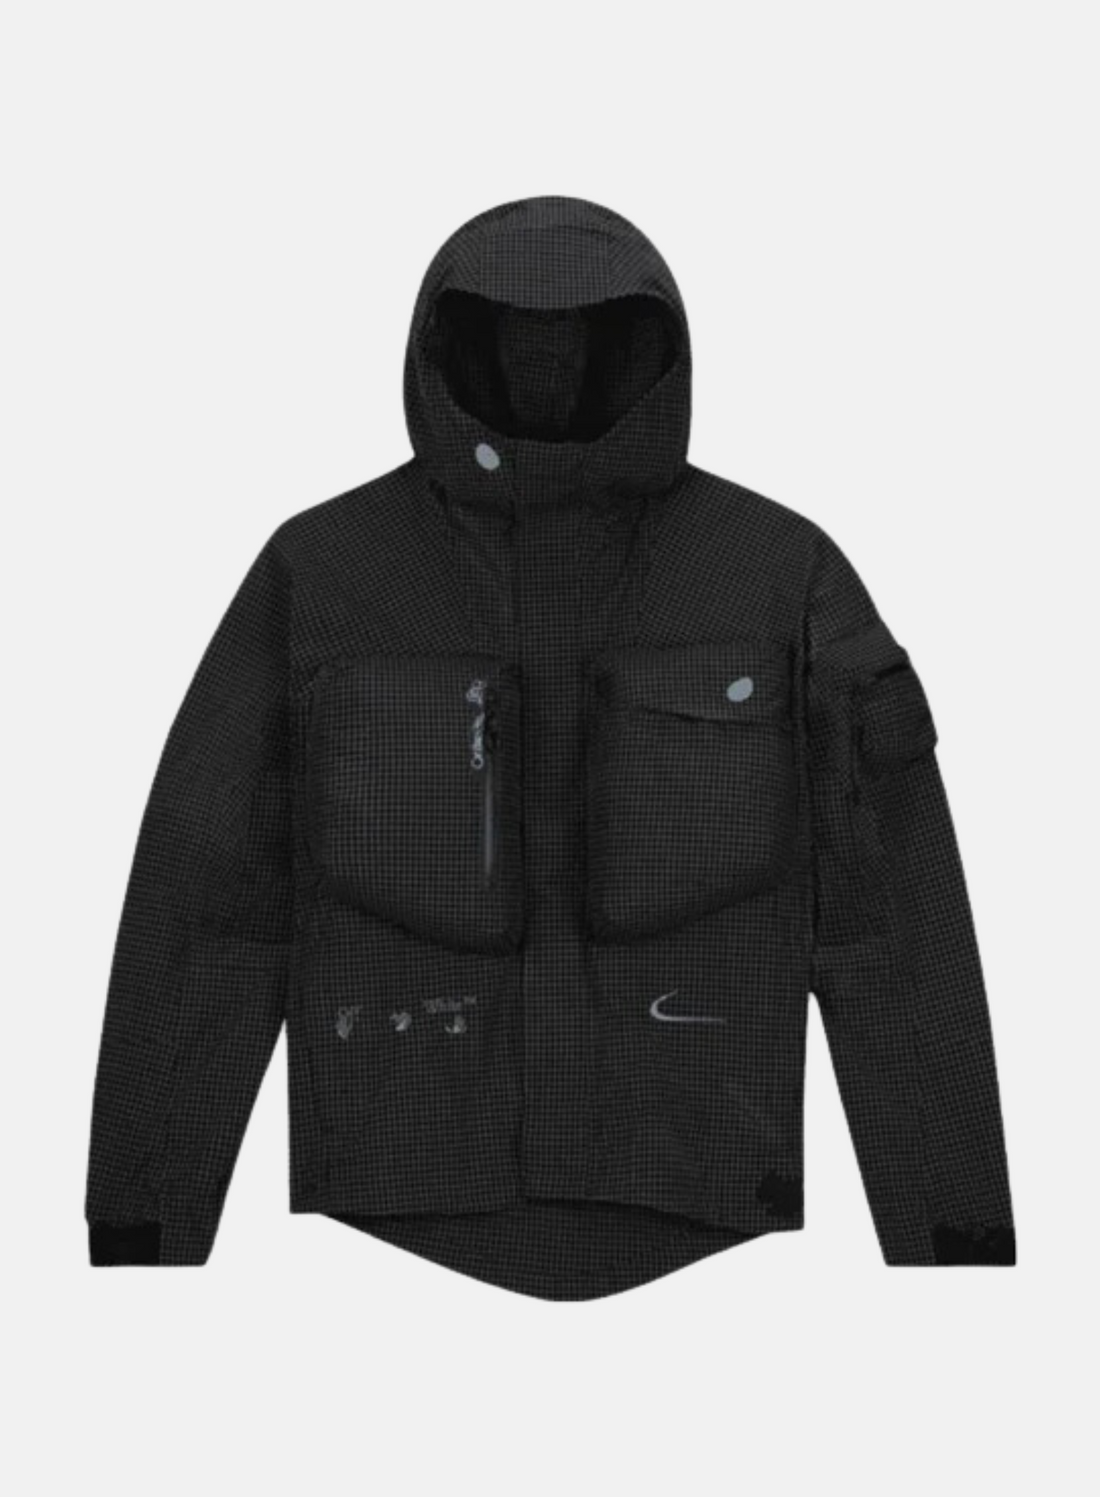 Nike x Off-White Nrg Track Jacket Black - Hympala Store 